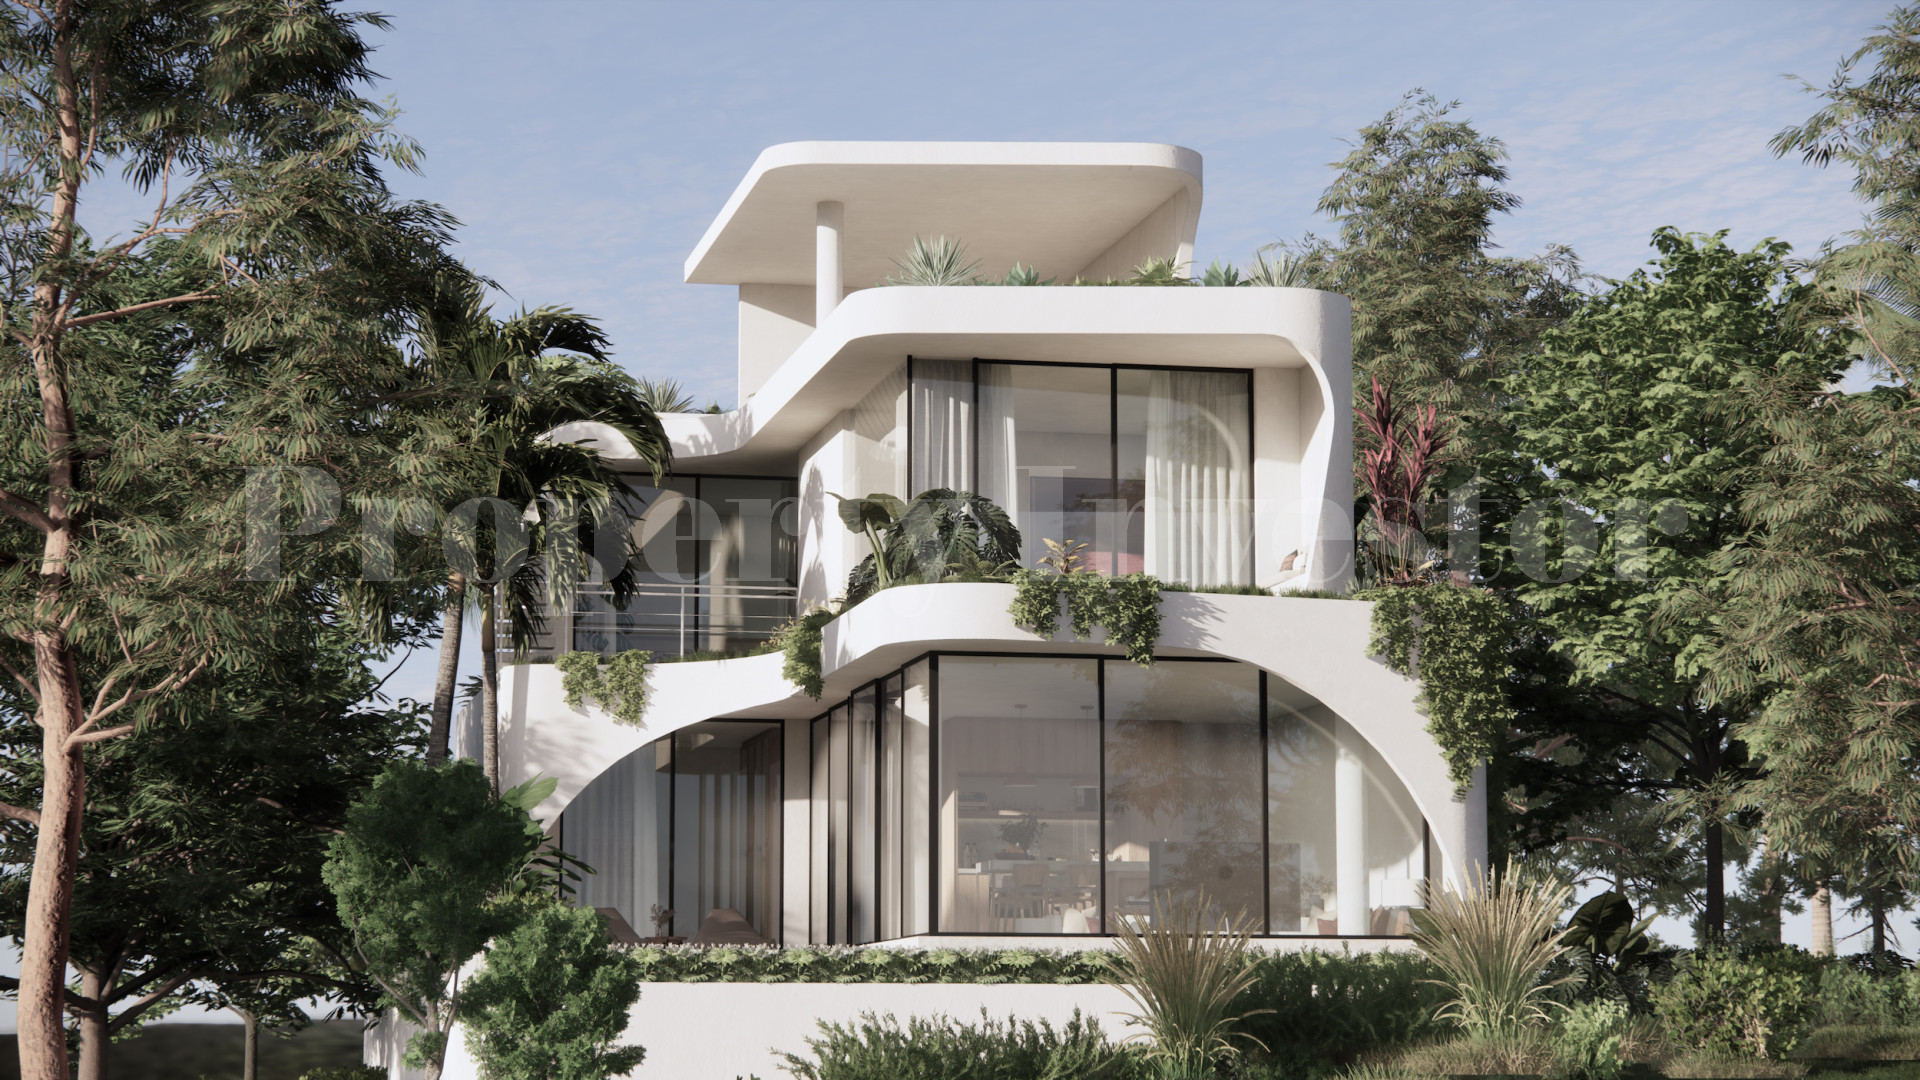 Modern Off-Plan 3 Bedroom Luxury Oceanview Villas for Sale in Uluwatu, Bali from $395,000